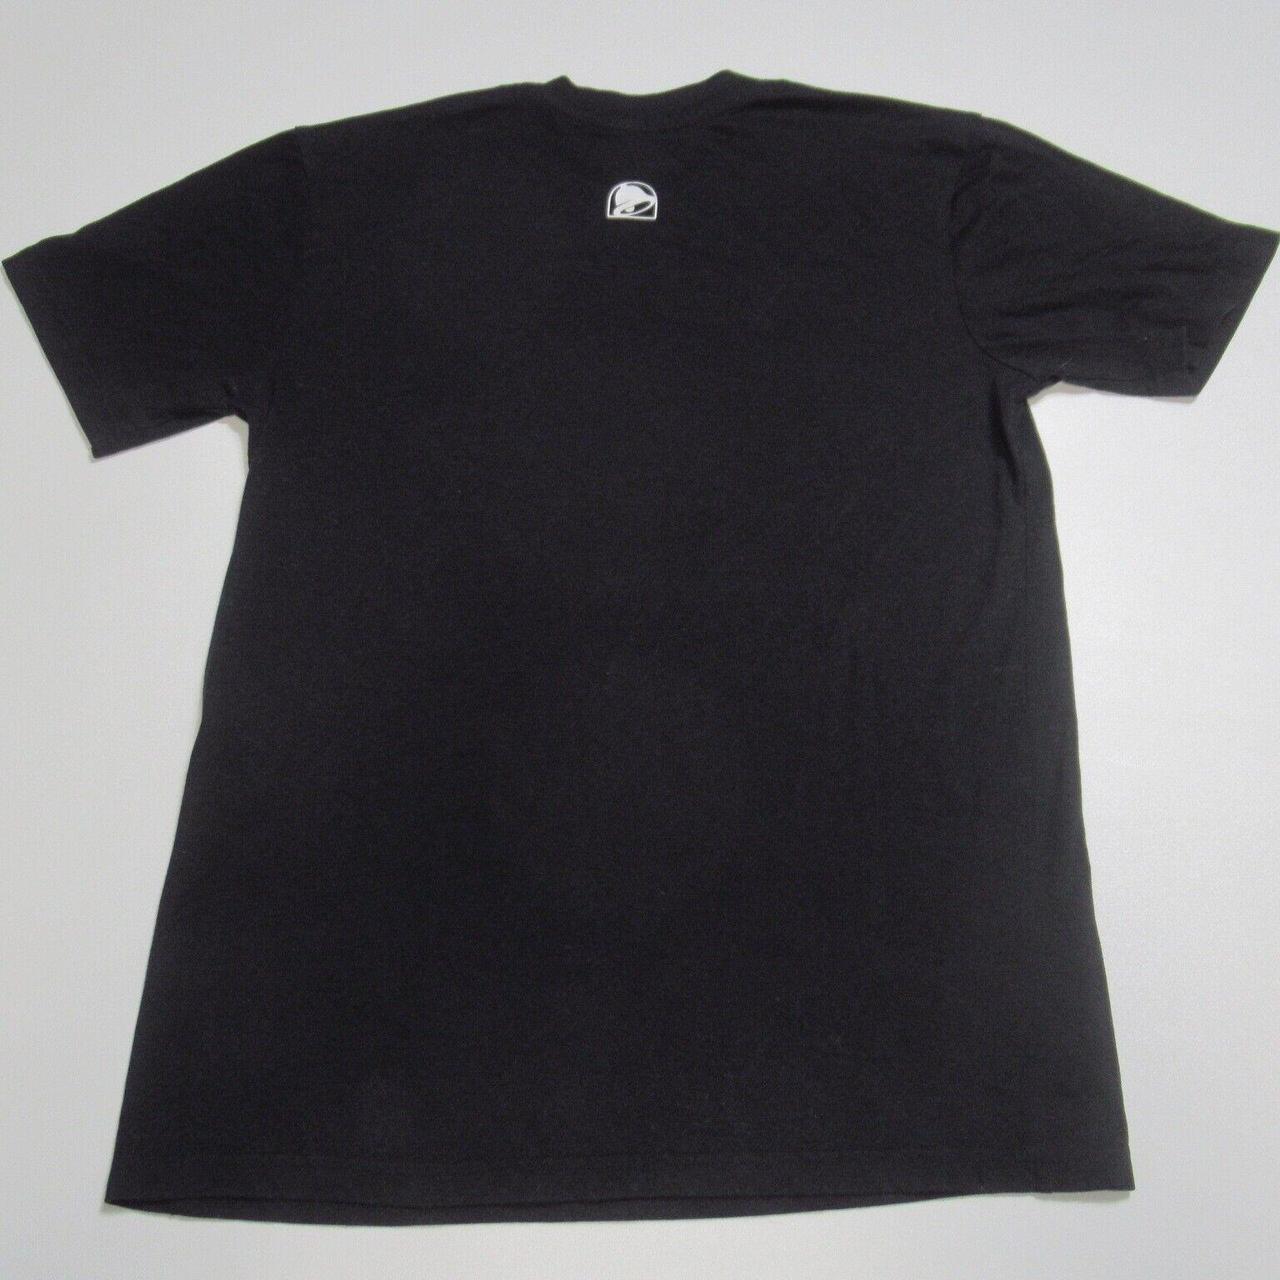 Bell Men's White and Black T-shirt (4)